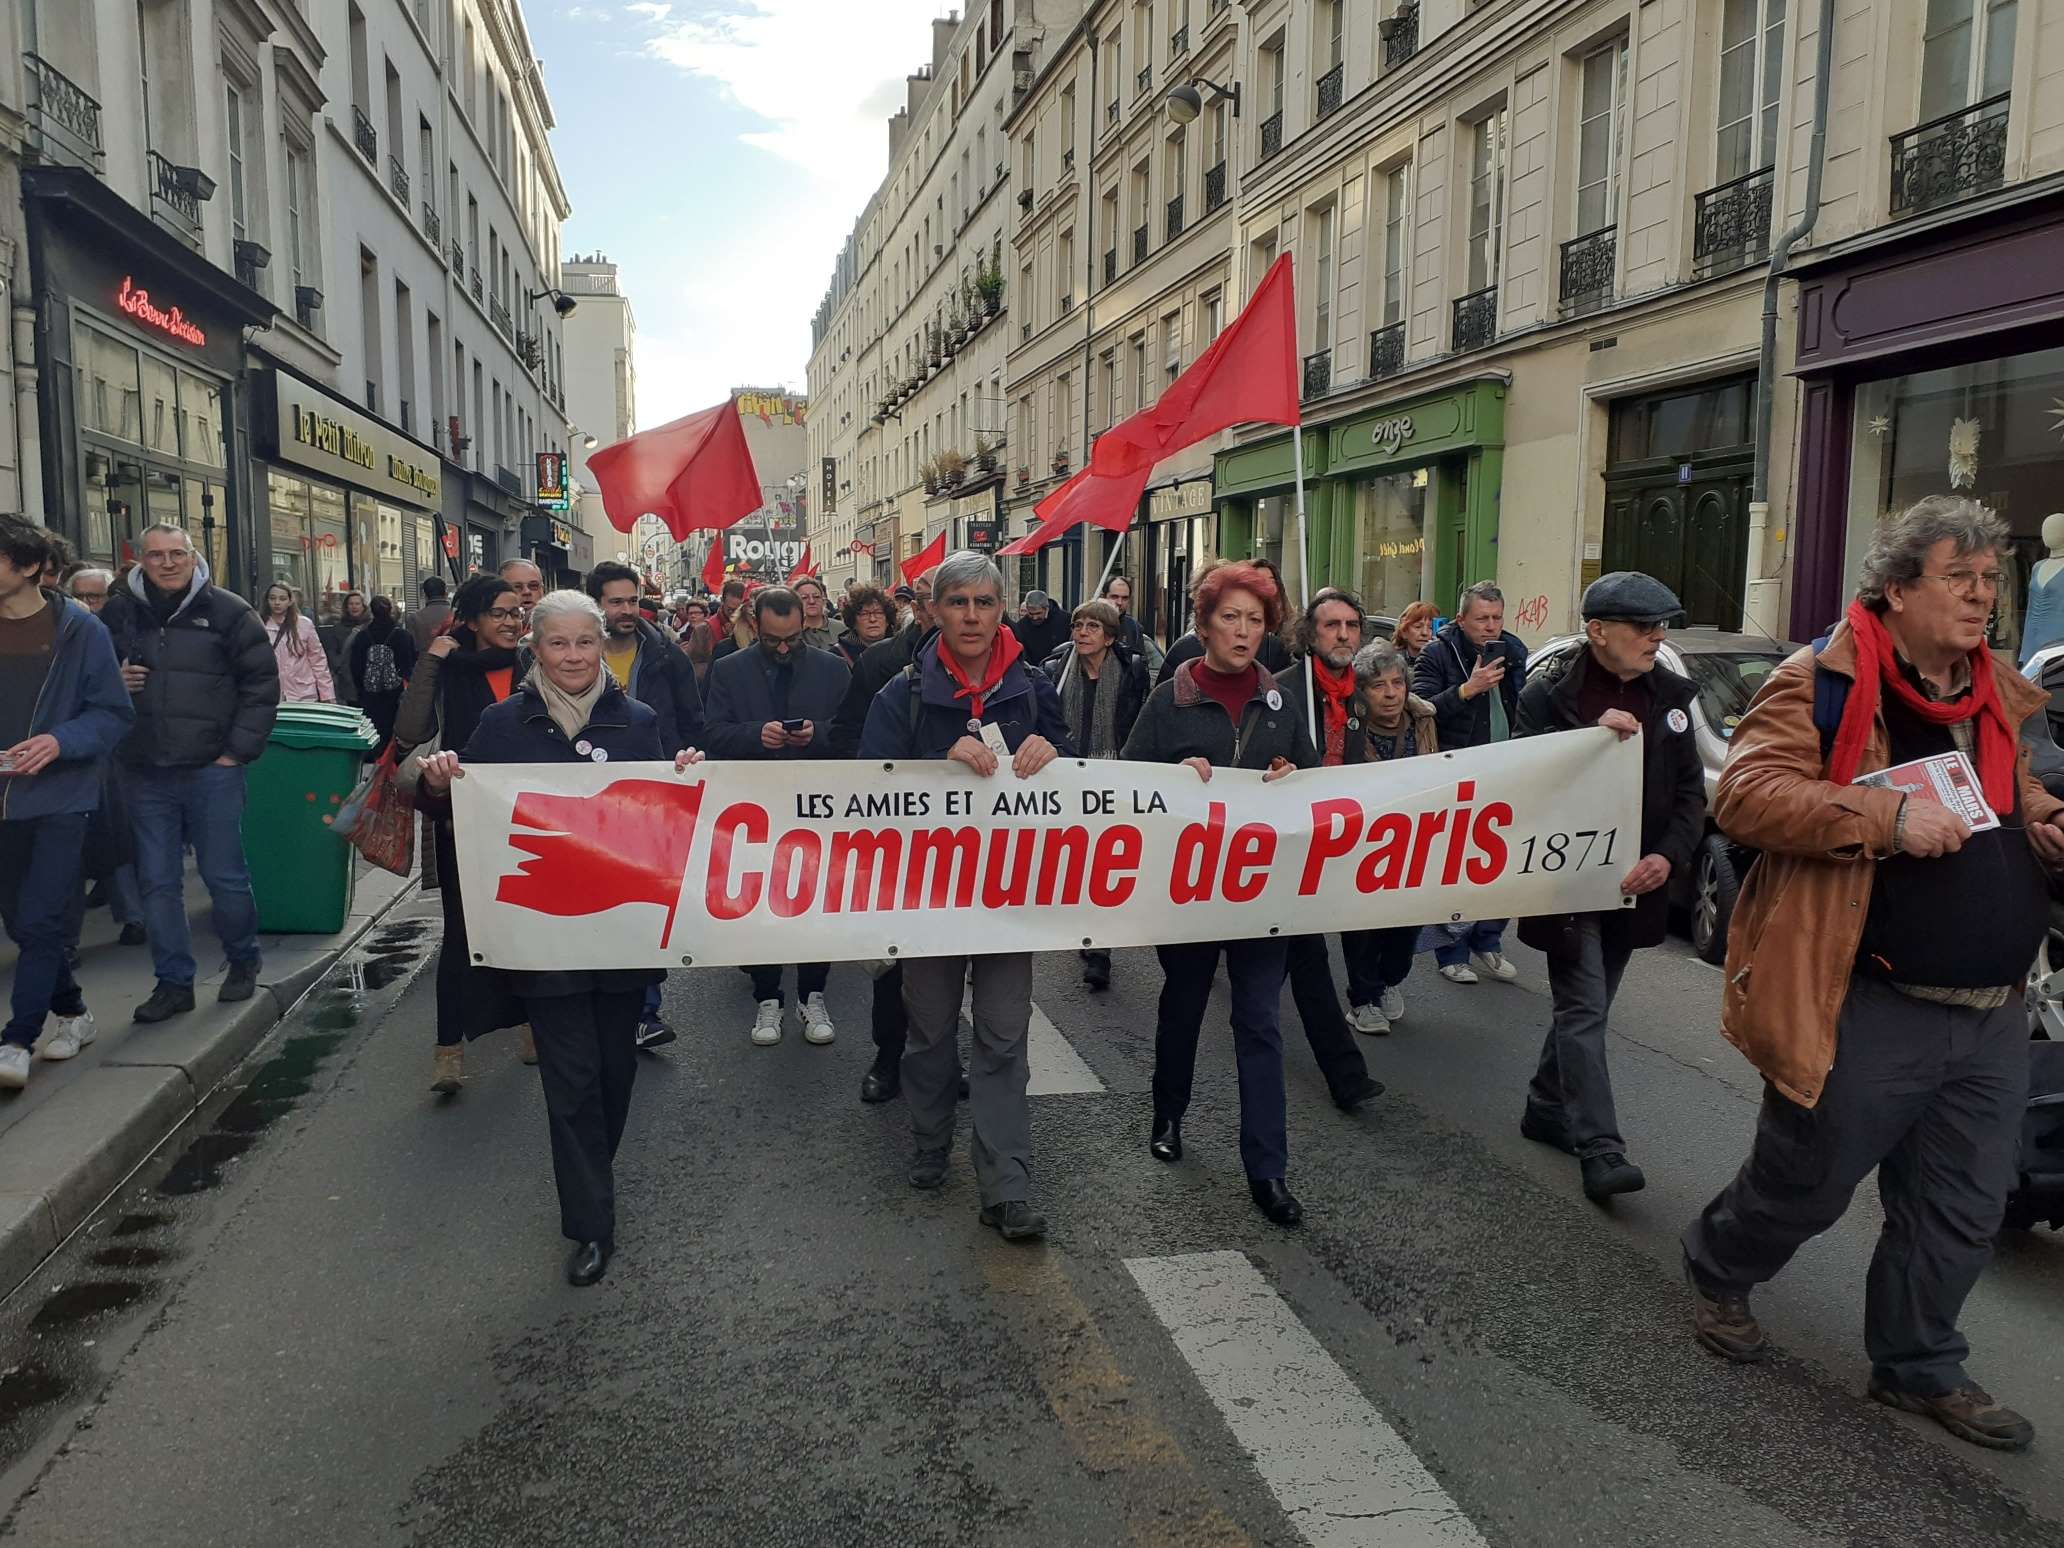 18 mars 2023 - Commémoration de la Commune par les Amies et Amis de la Commune de Paris 1871. En manif. rue Oberkampf dans le 11ème arrondissement.